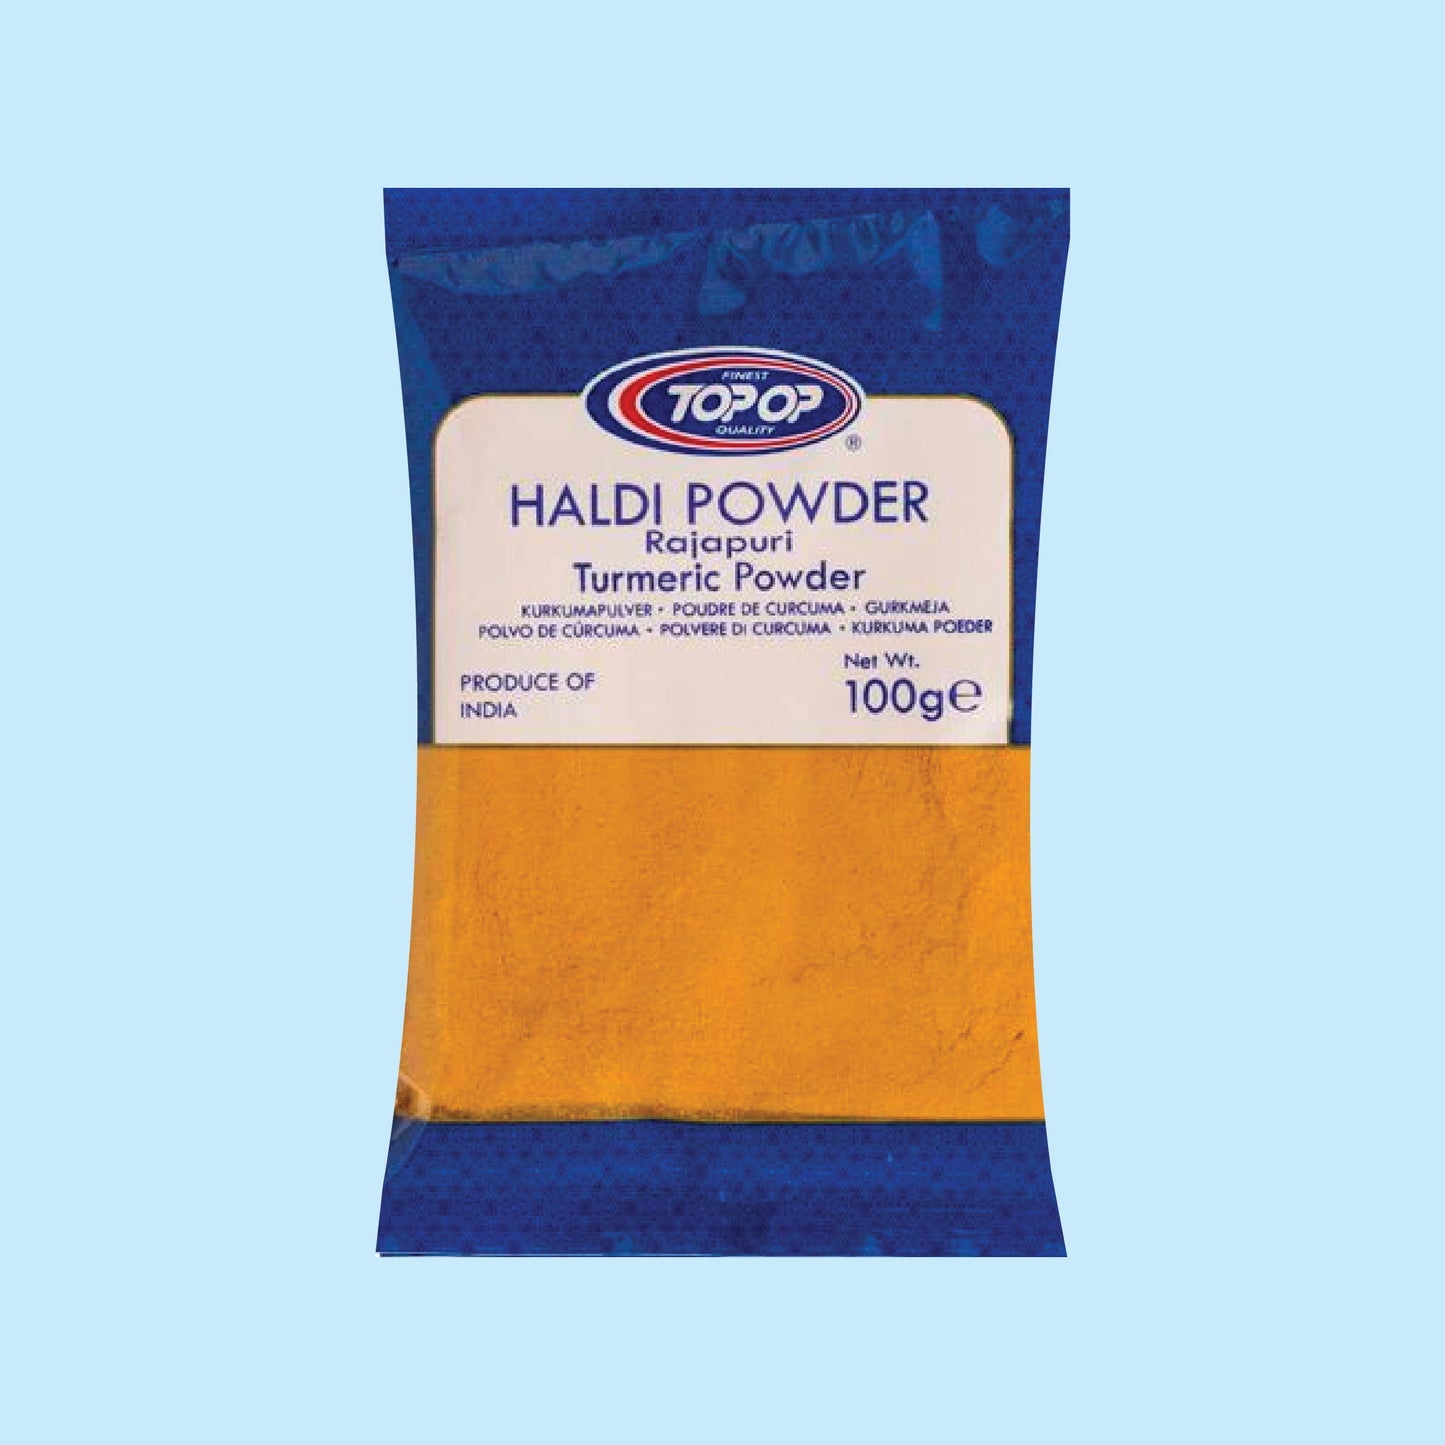 Top-Op Haldi (Turmeric) Powder Rajapuri